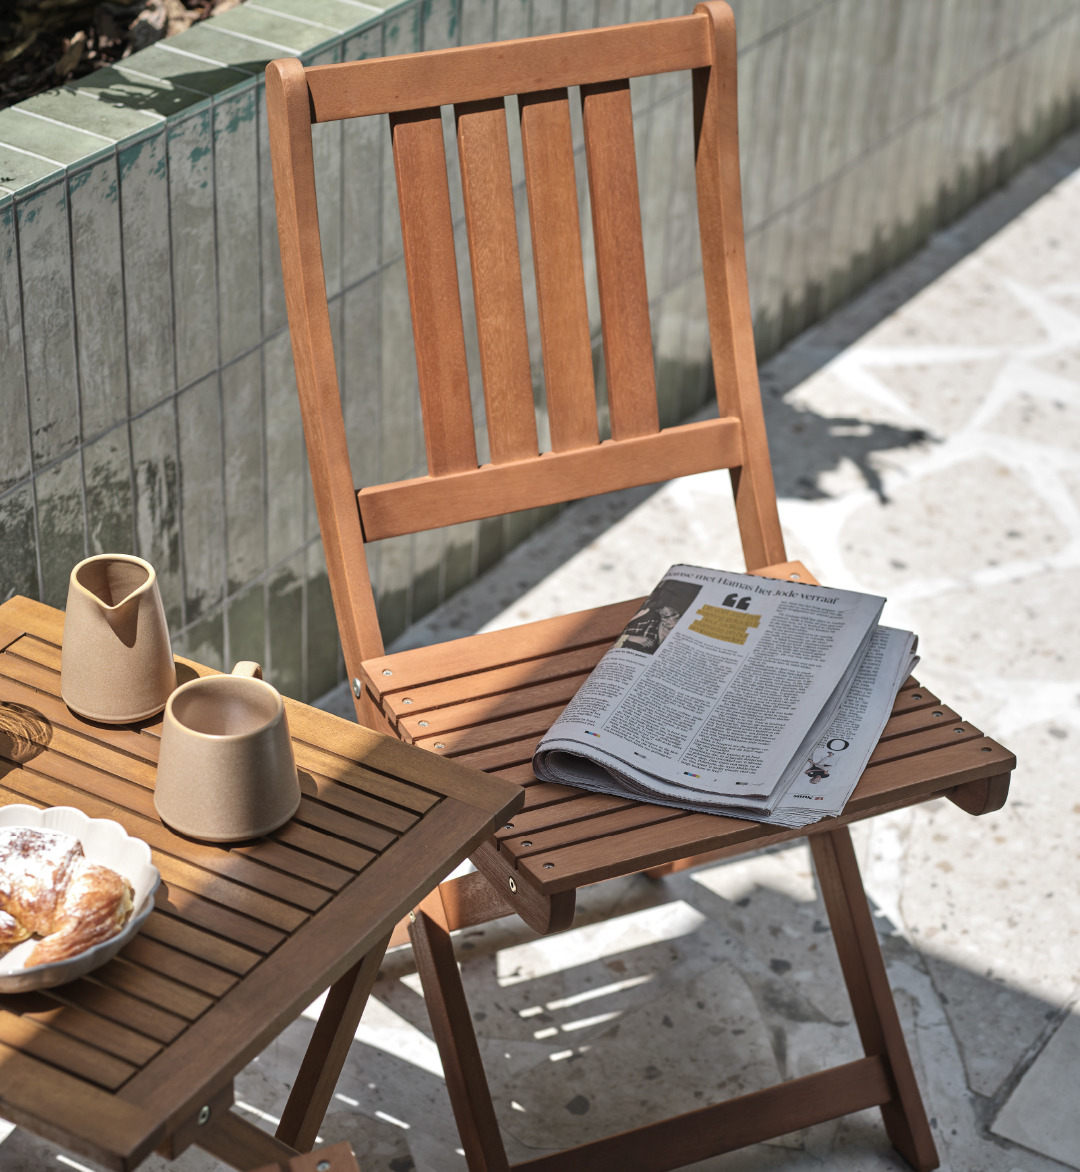 Table et chaise pliantes de jardin sur terrasse avec tasse à café